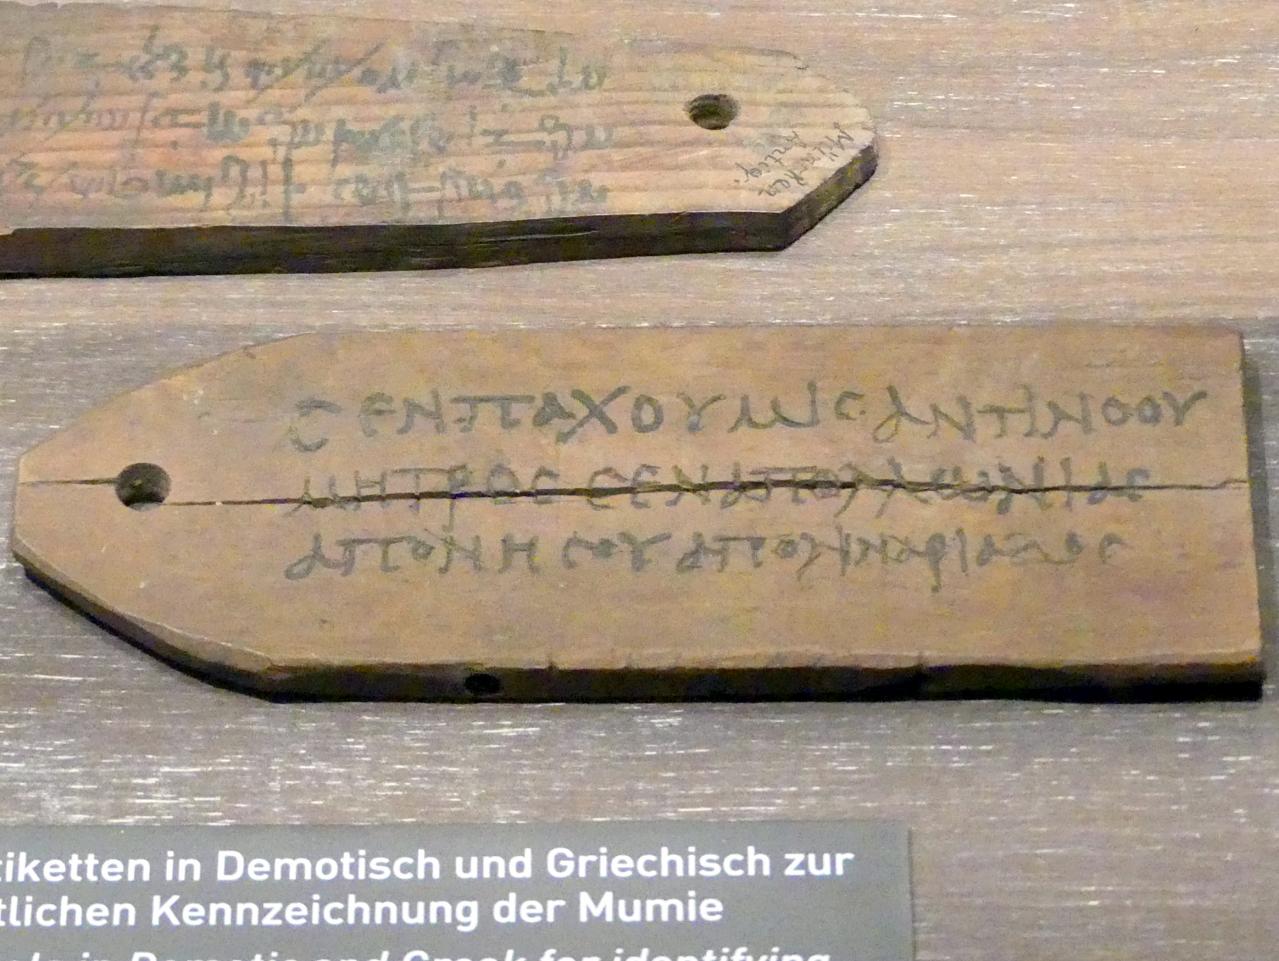 Etikette in Griechisch zur namentlichen Kennzeichnung einer Mumie, Koptische Zeit, 200 - 800, 400 - 600